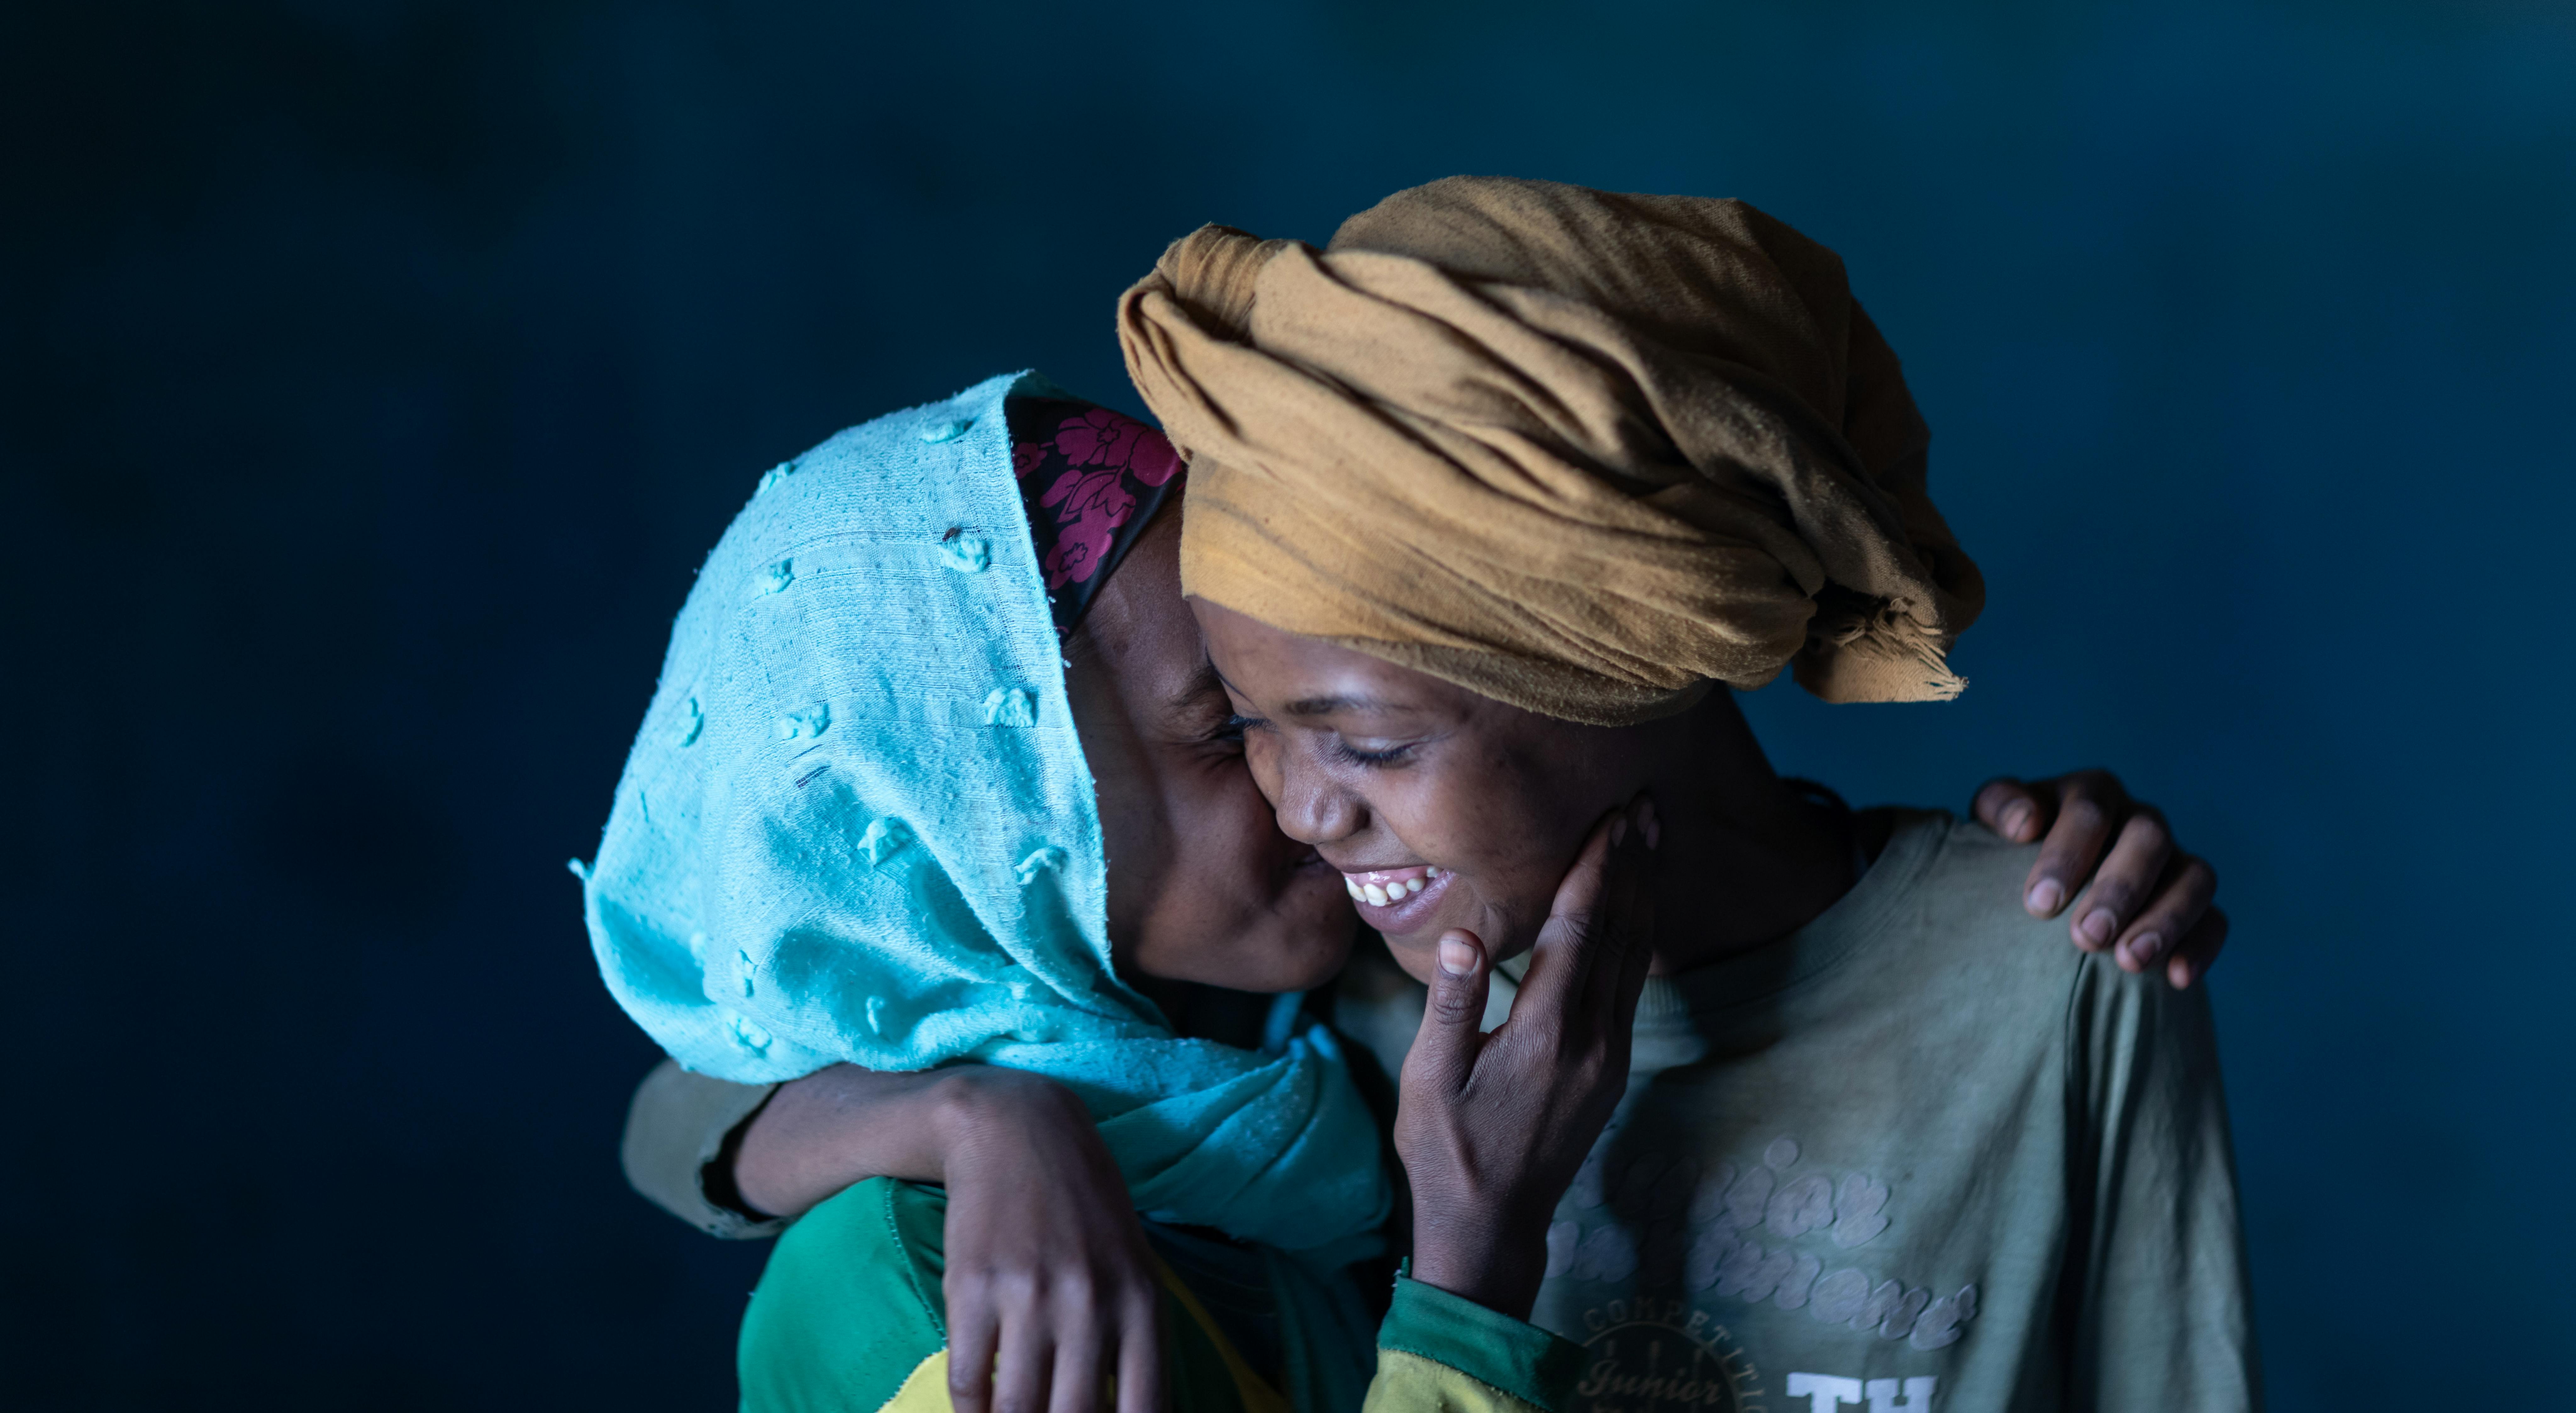 Etiopia:Magfira Kemsur, a sinistra, e Mekiya Mude sono migliori amiche. Quando Magfira ha saputo che Mekiya stava per essere mutilata, ha allertato le autorità e queste sono intervenute